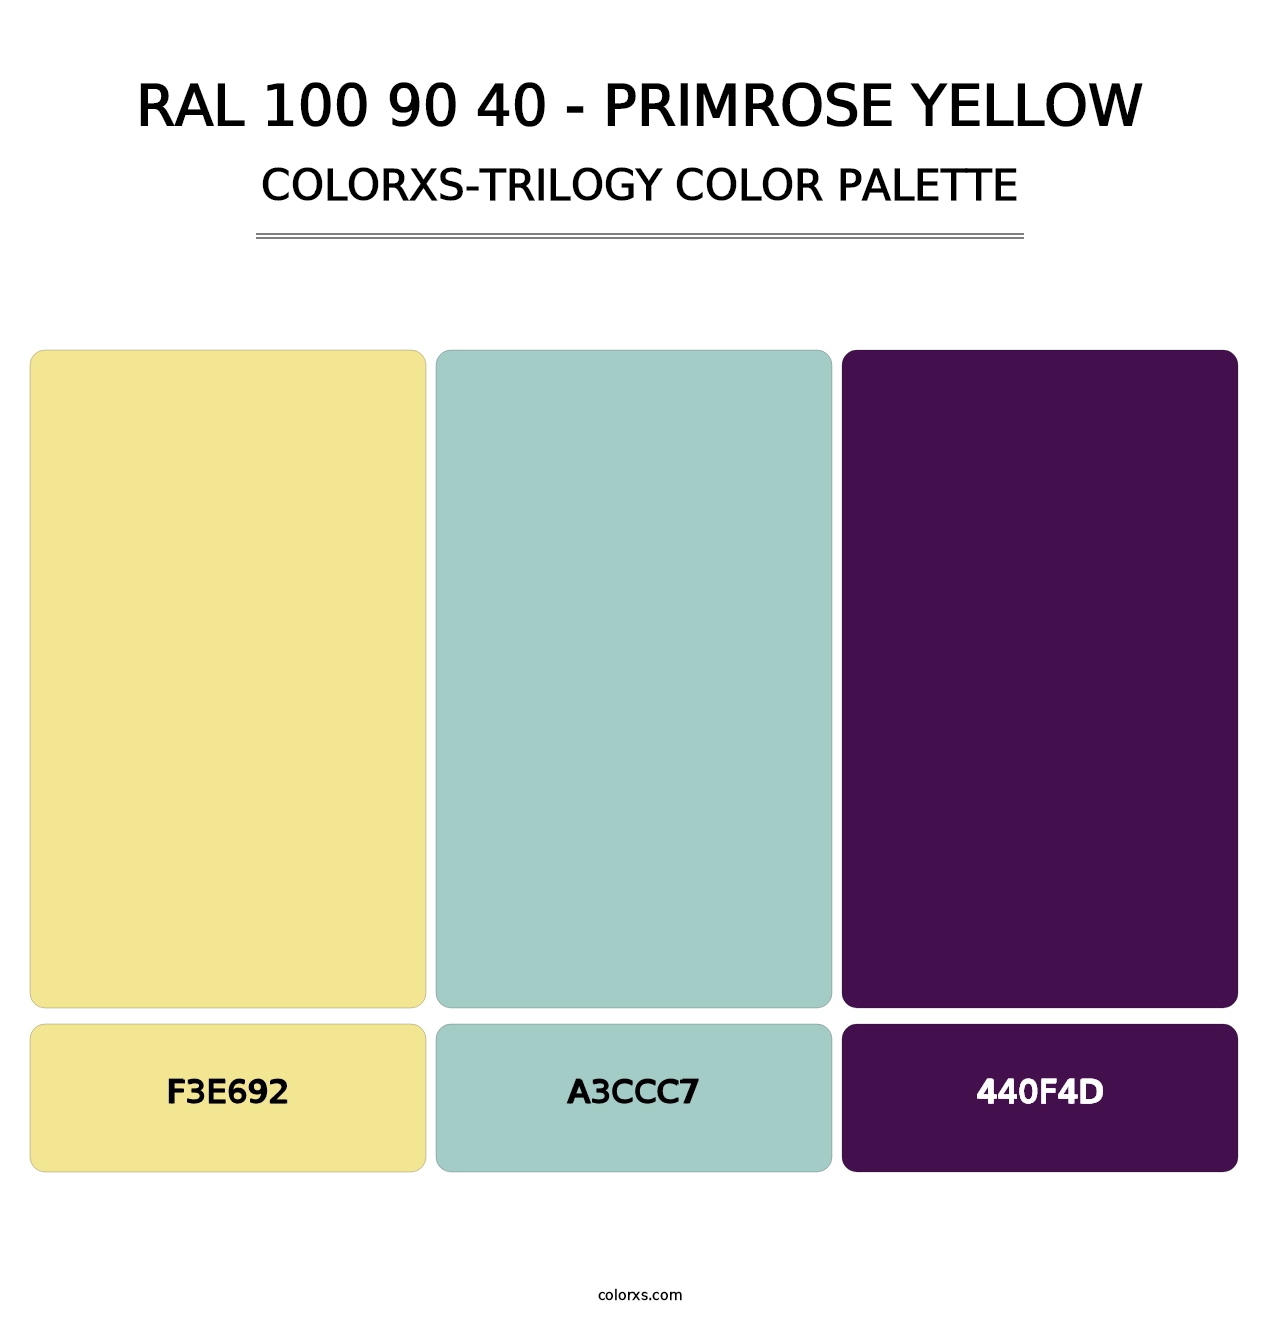 RAL 100 90 40 - Primrose Yellow - Colorxs Trilogy Palette